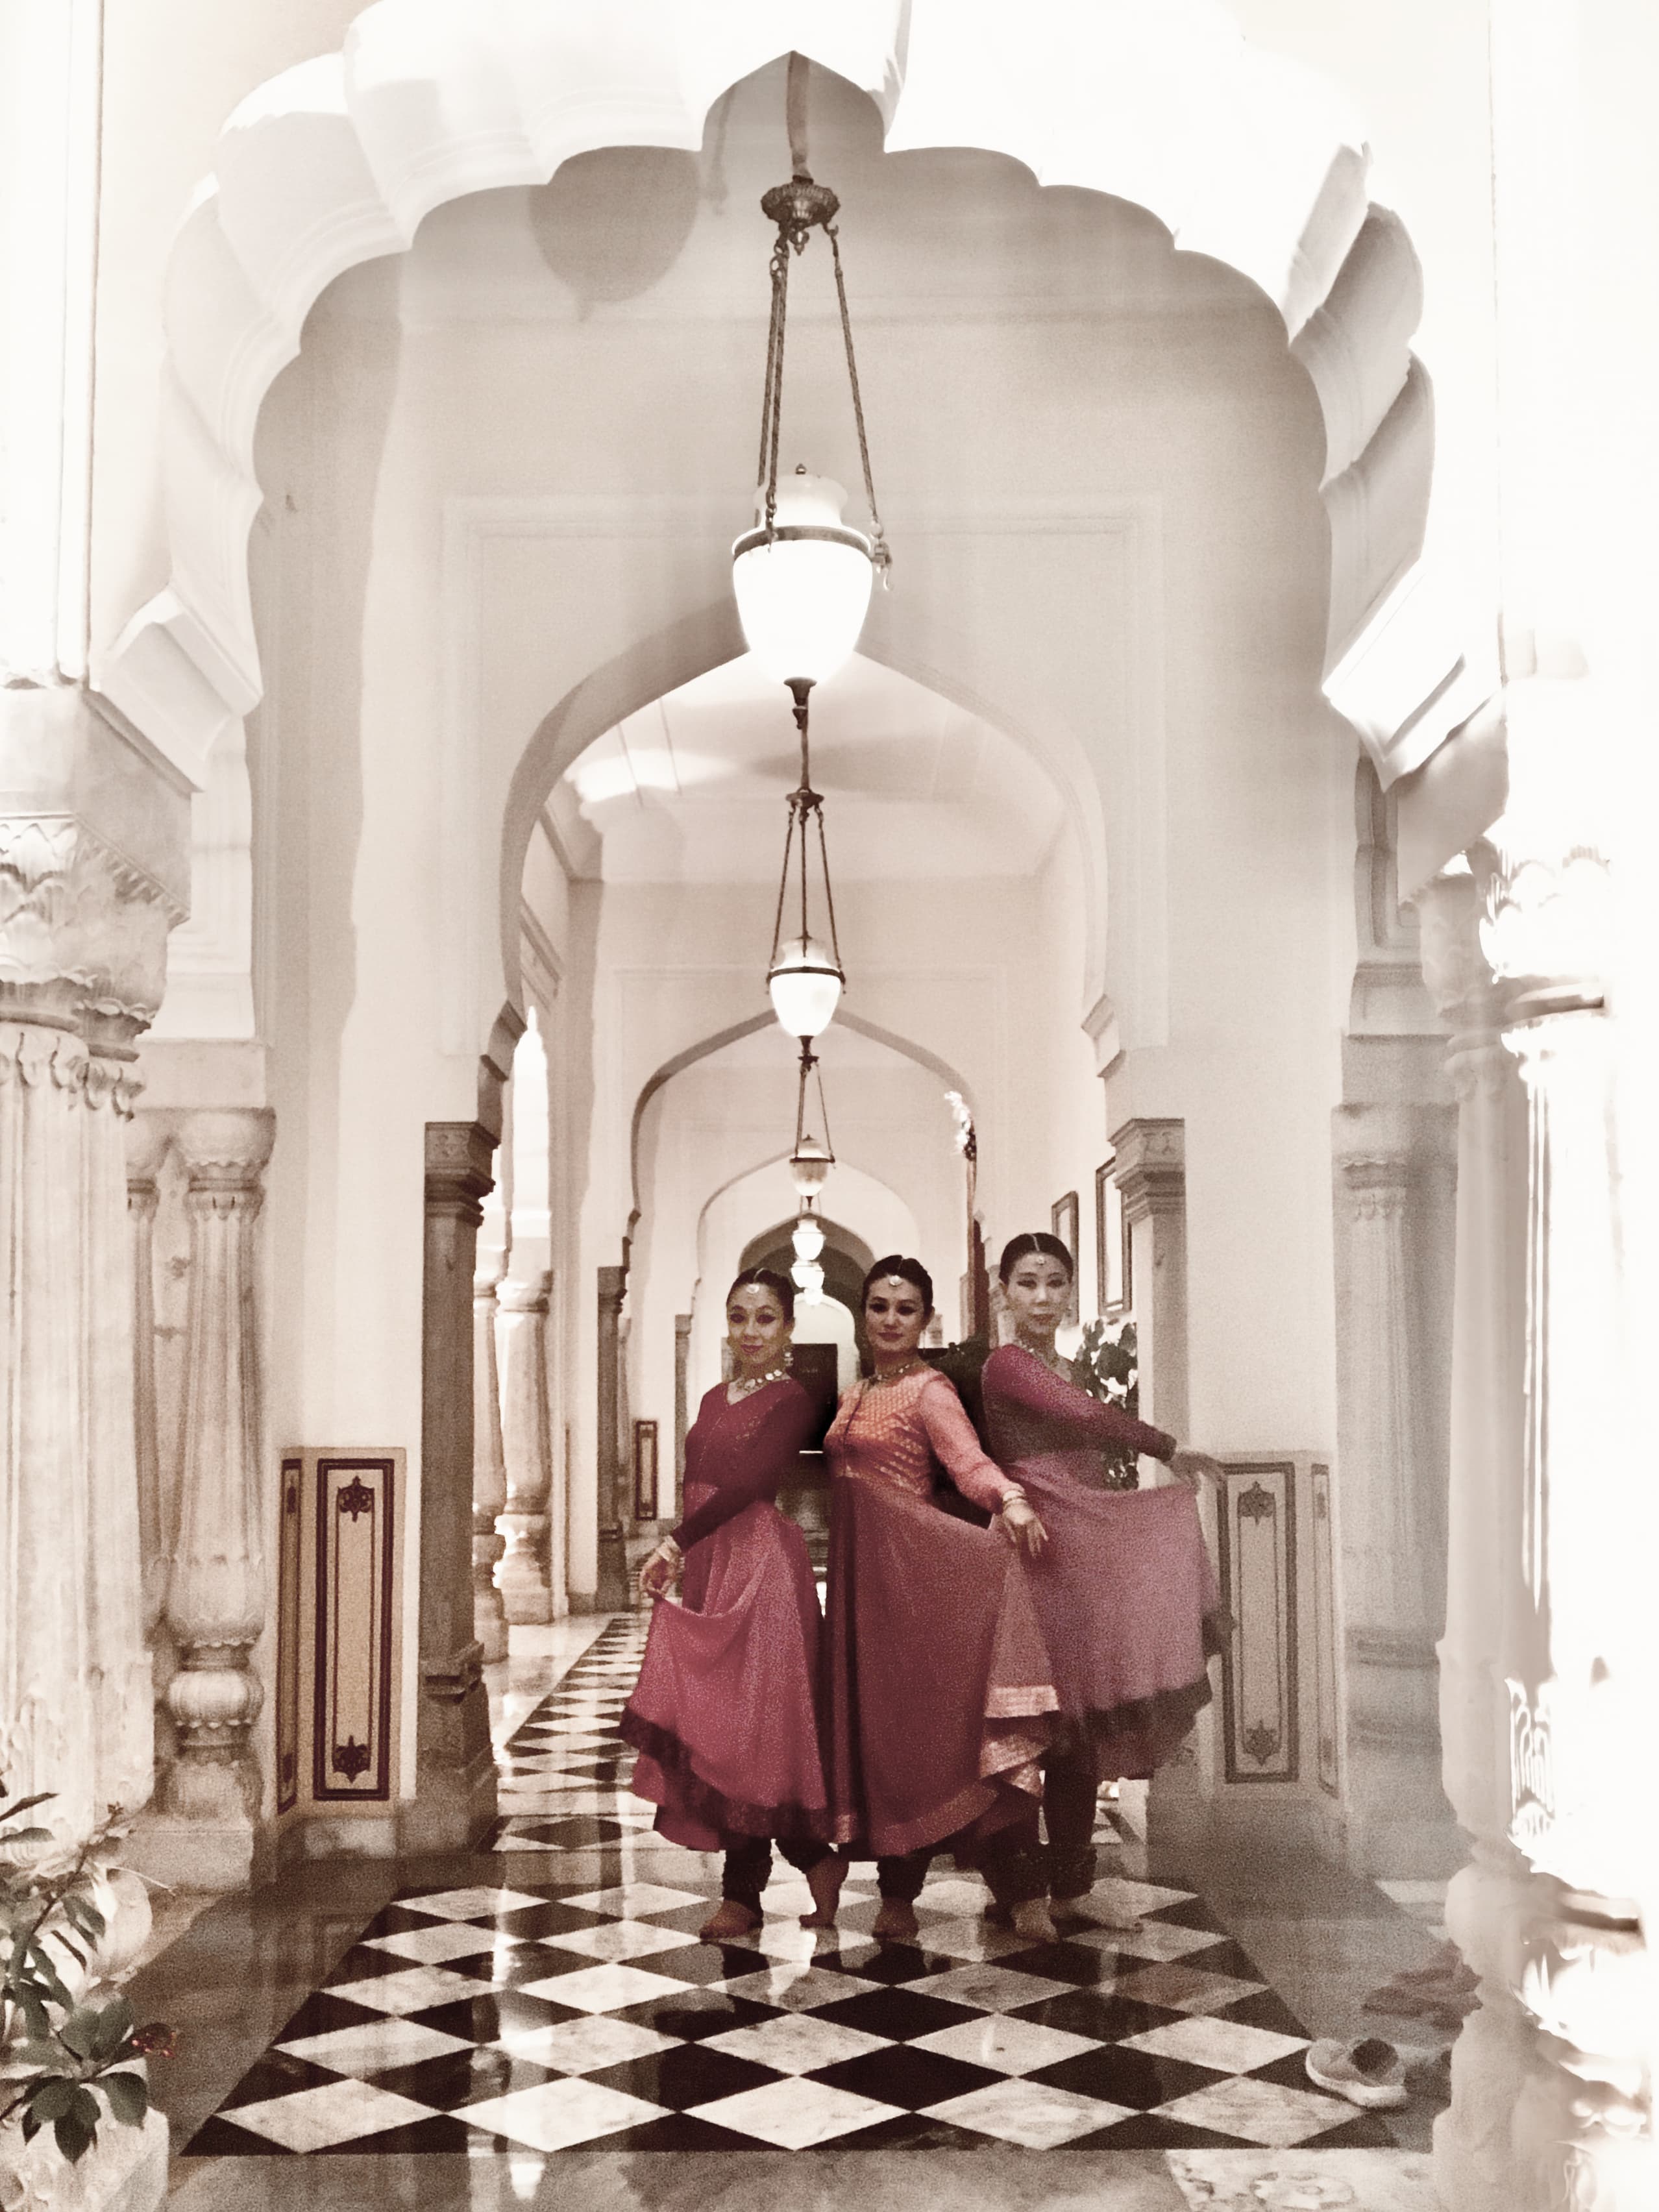 インド古典舞踊